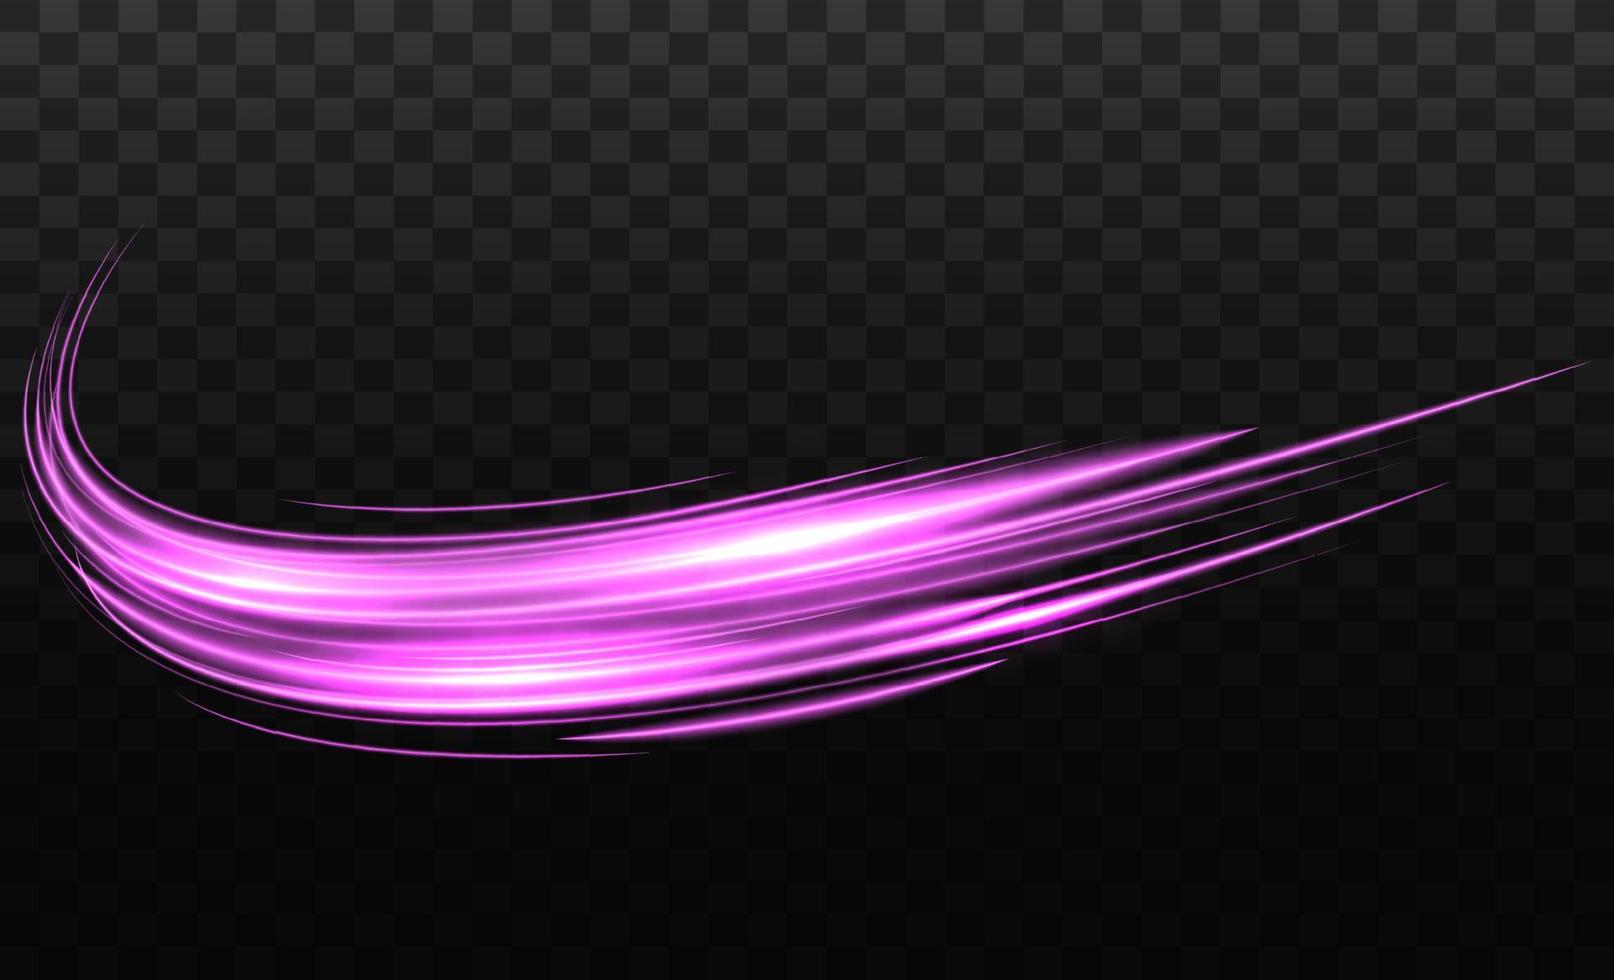 kromme licht effect van roze lijn. ronddraaien roze licht. neon gloeiend curves in donker ruimte. vector illustratie